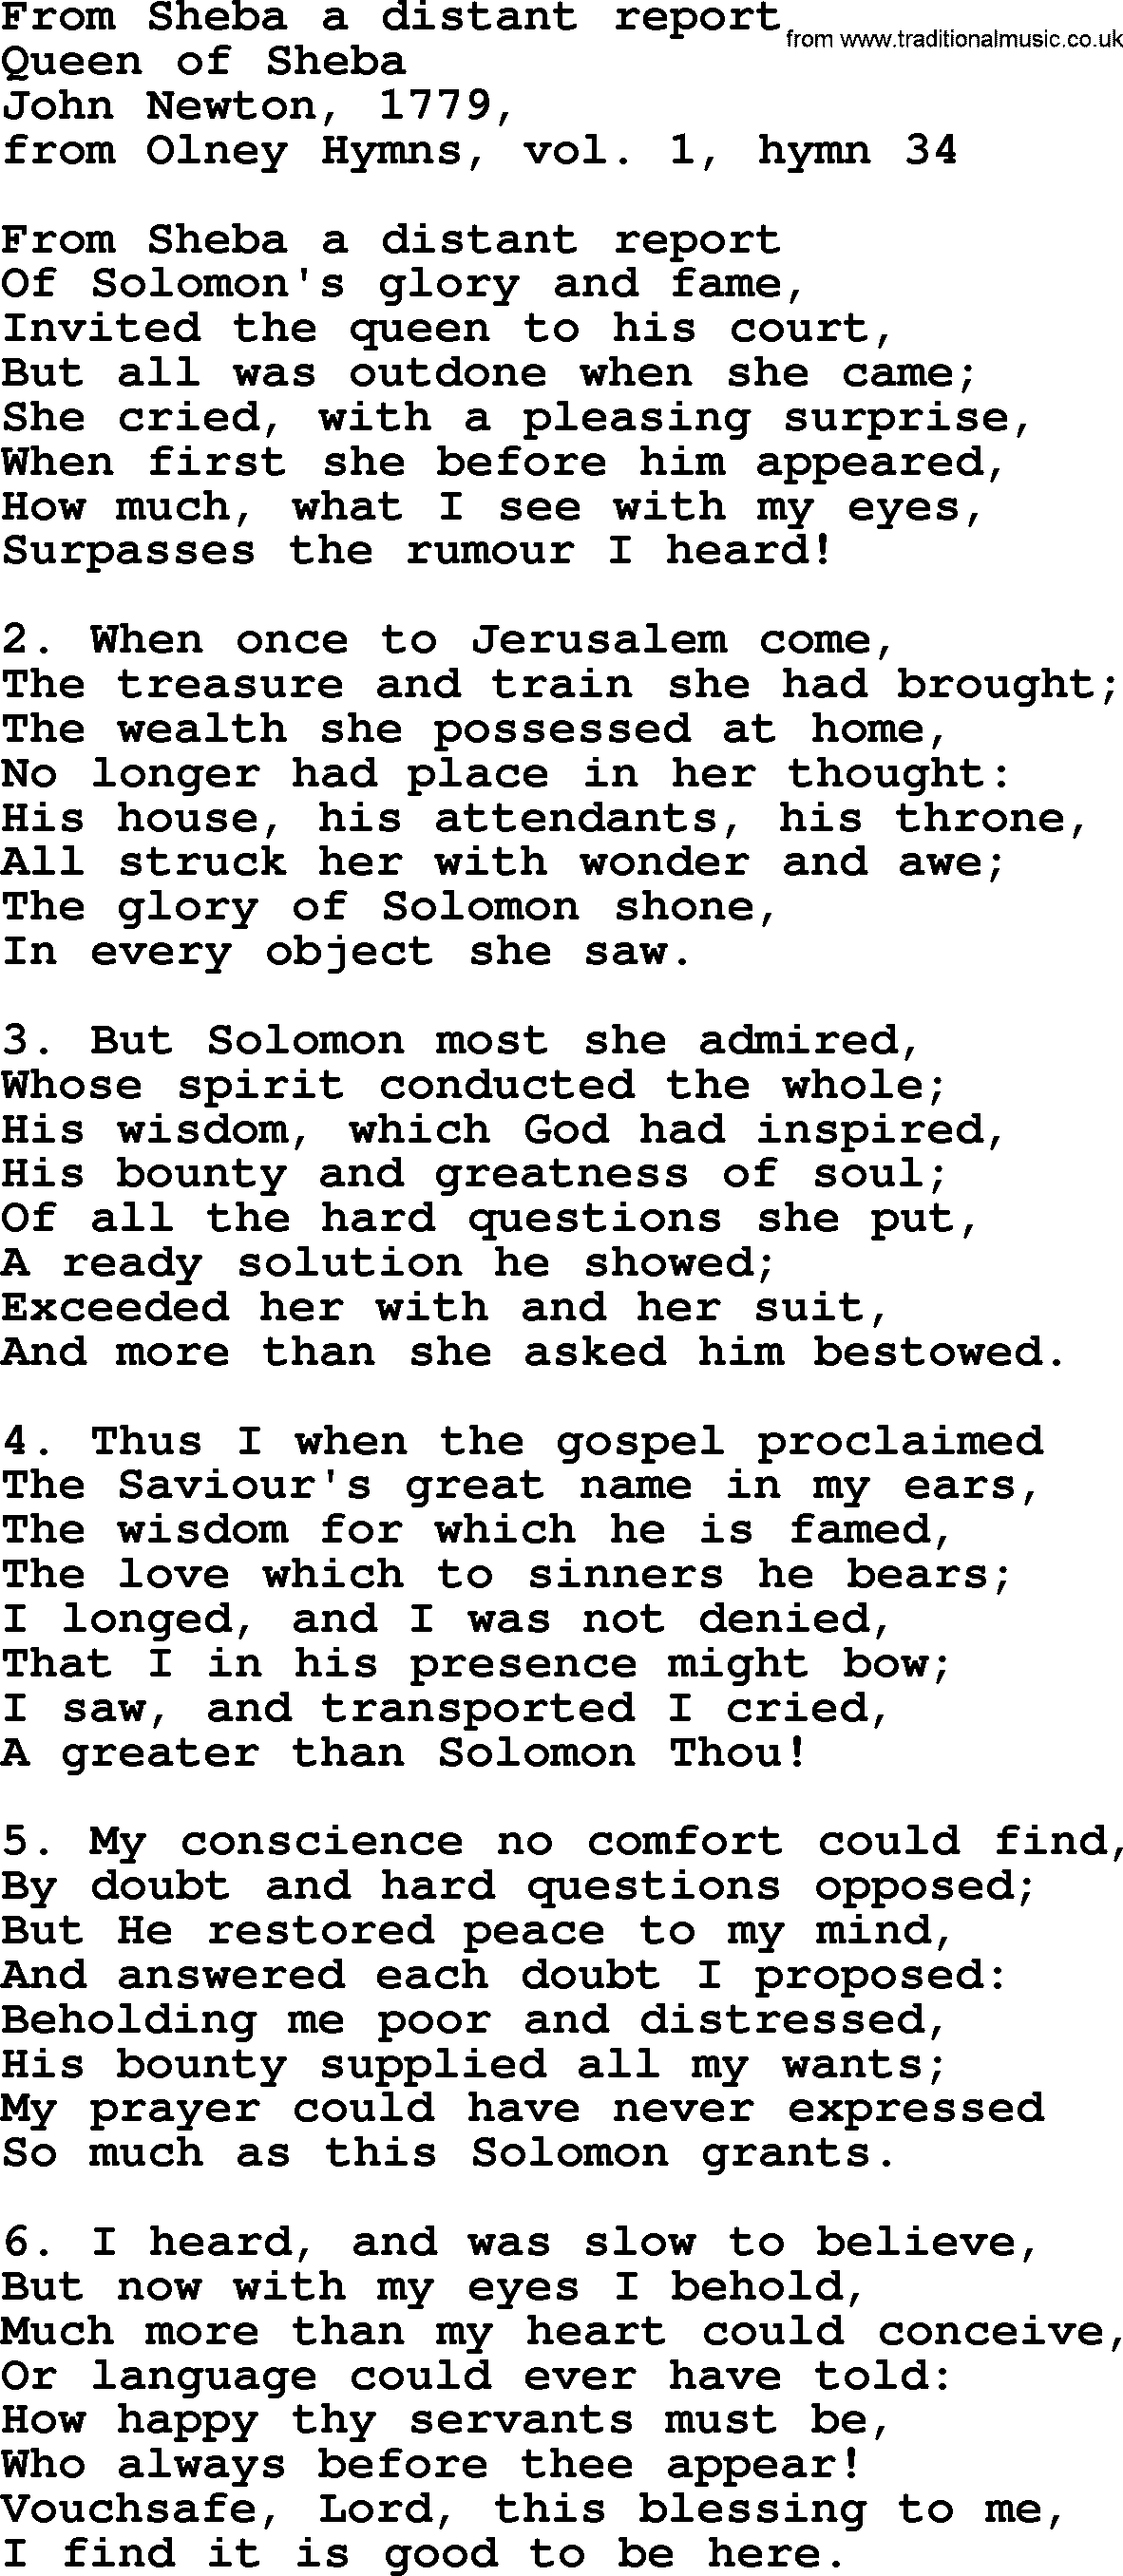 John Newton hymn: From Sheba A Distant Report, lyrics